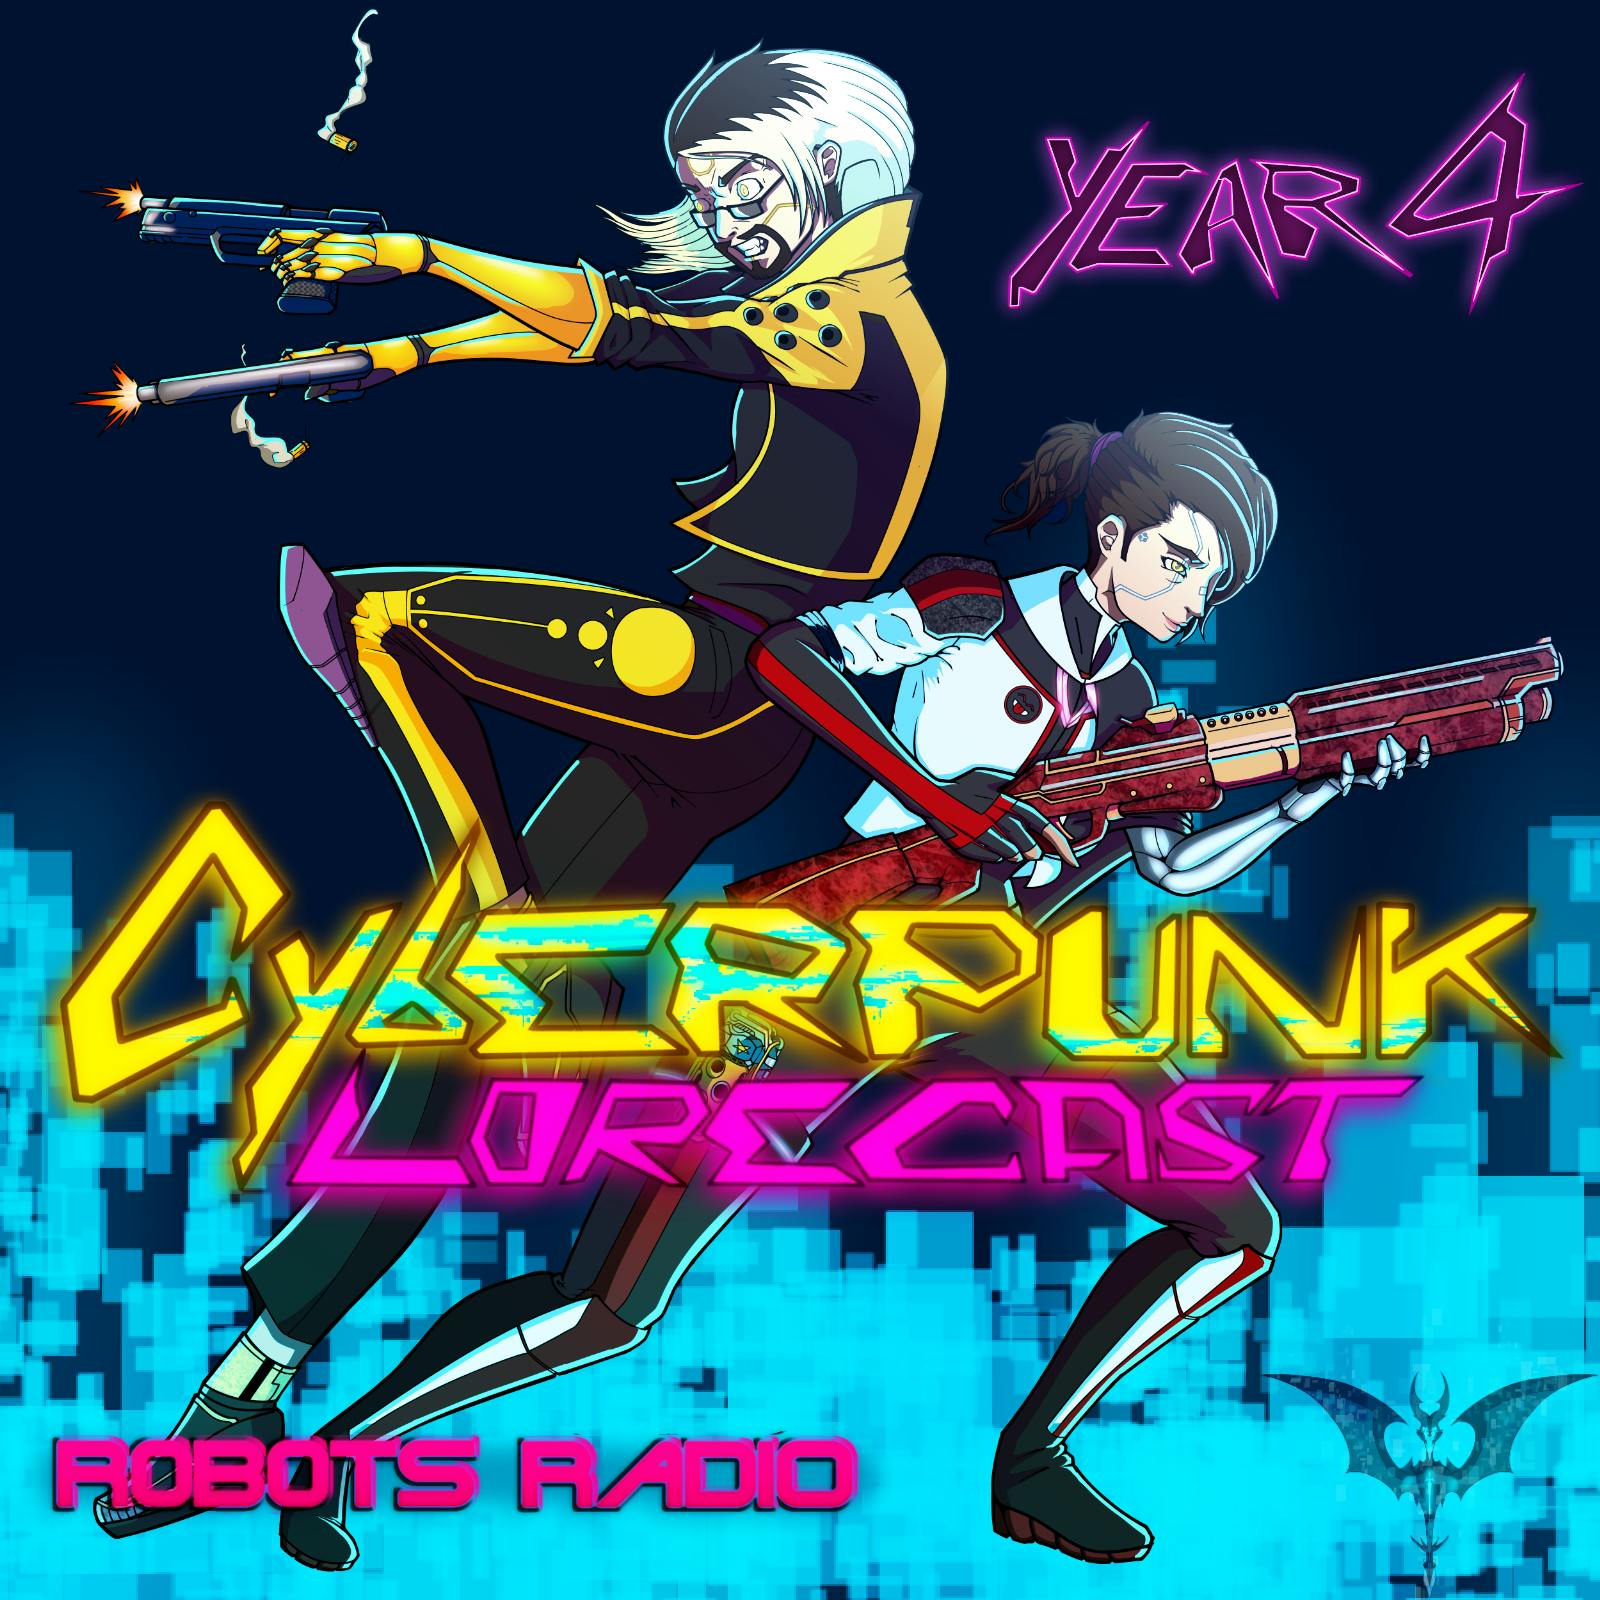 110: Cyberpunk: Edgerunners Review Episode 6-8